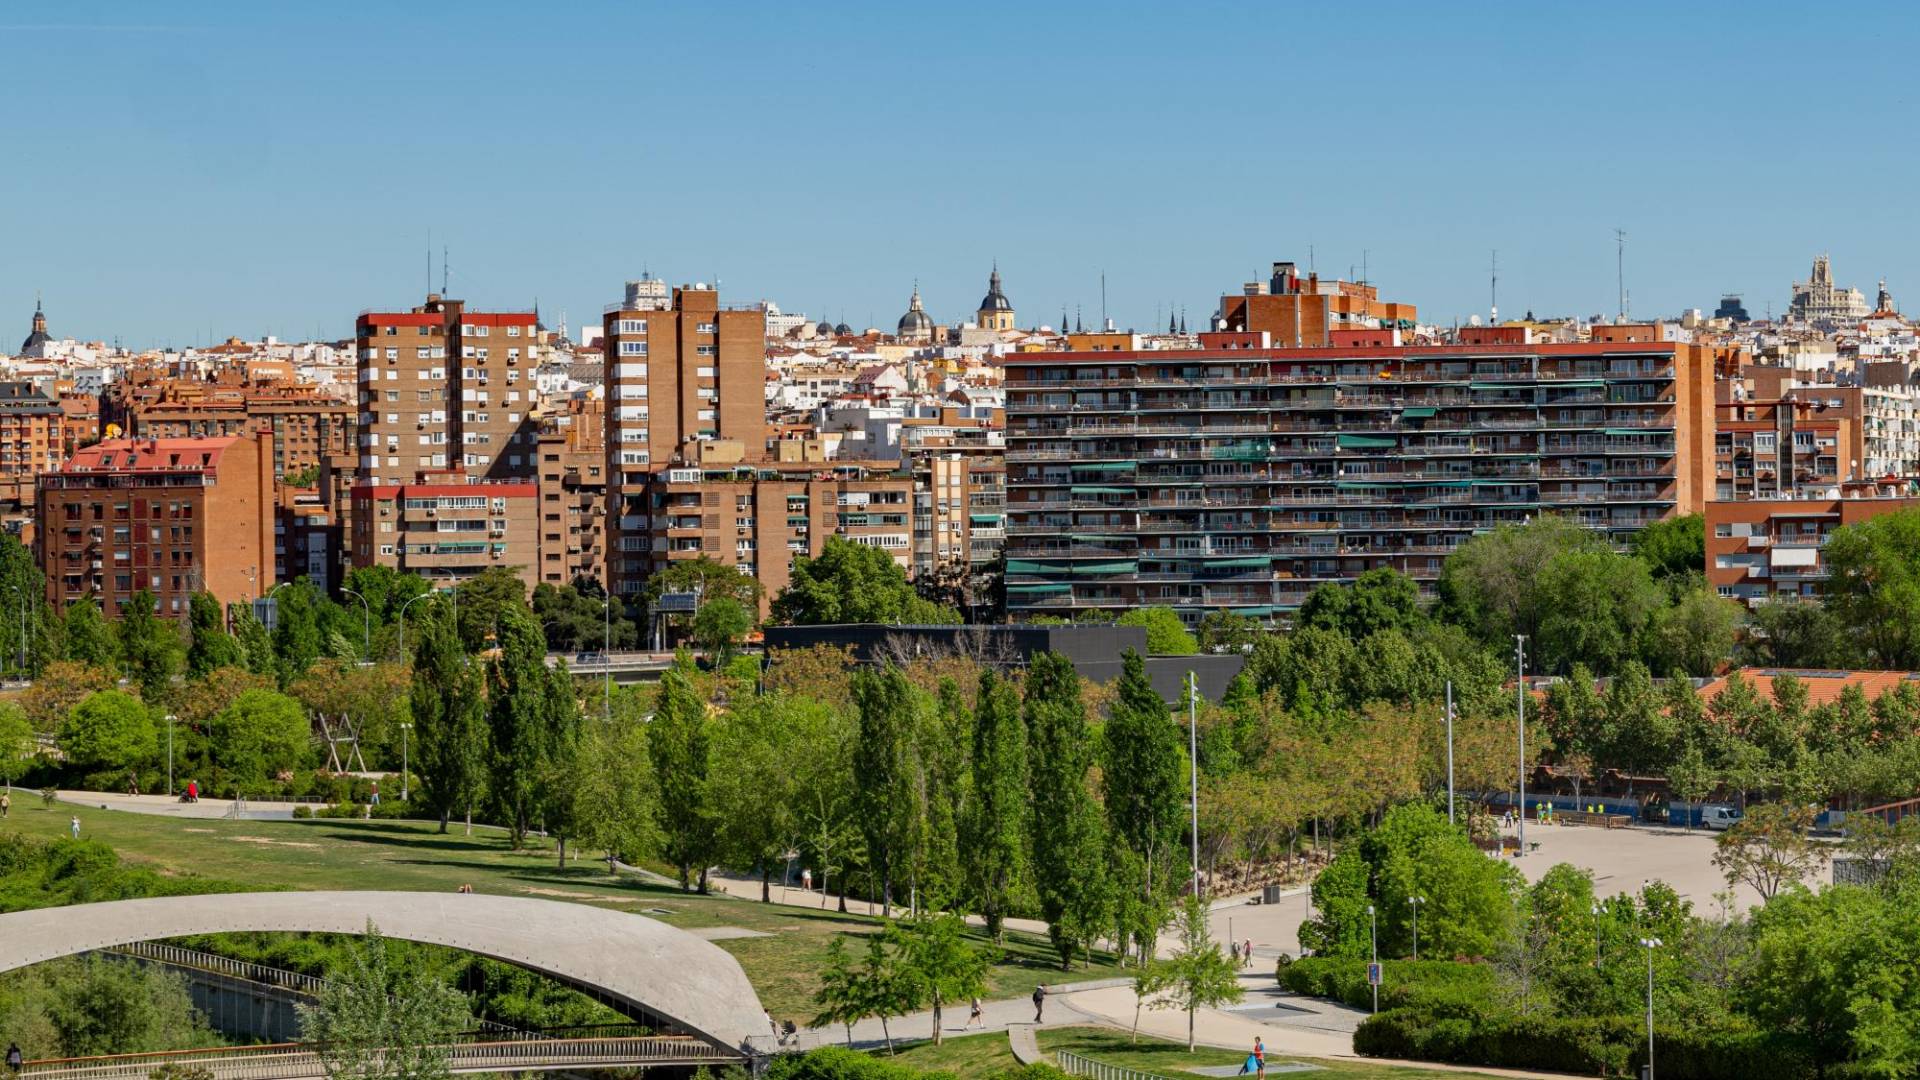 $!Un programa de visa dorada ha contribuido a alimentar una crisis inmobiliaria para los españoles. Madrid, la capital.